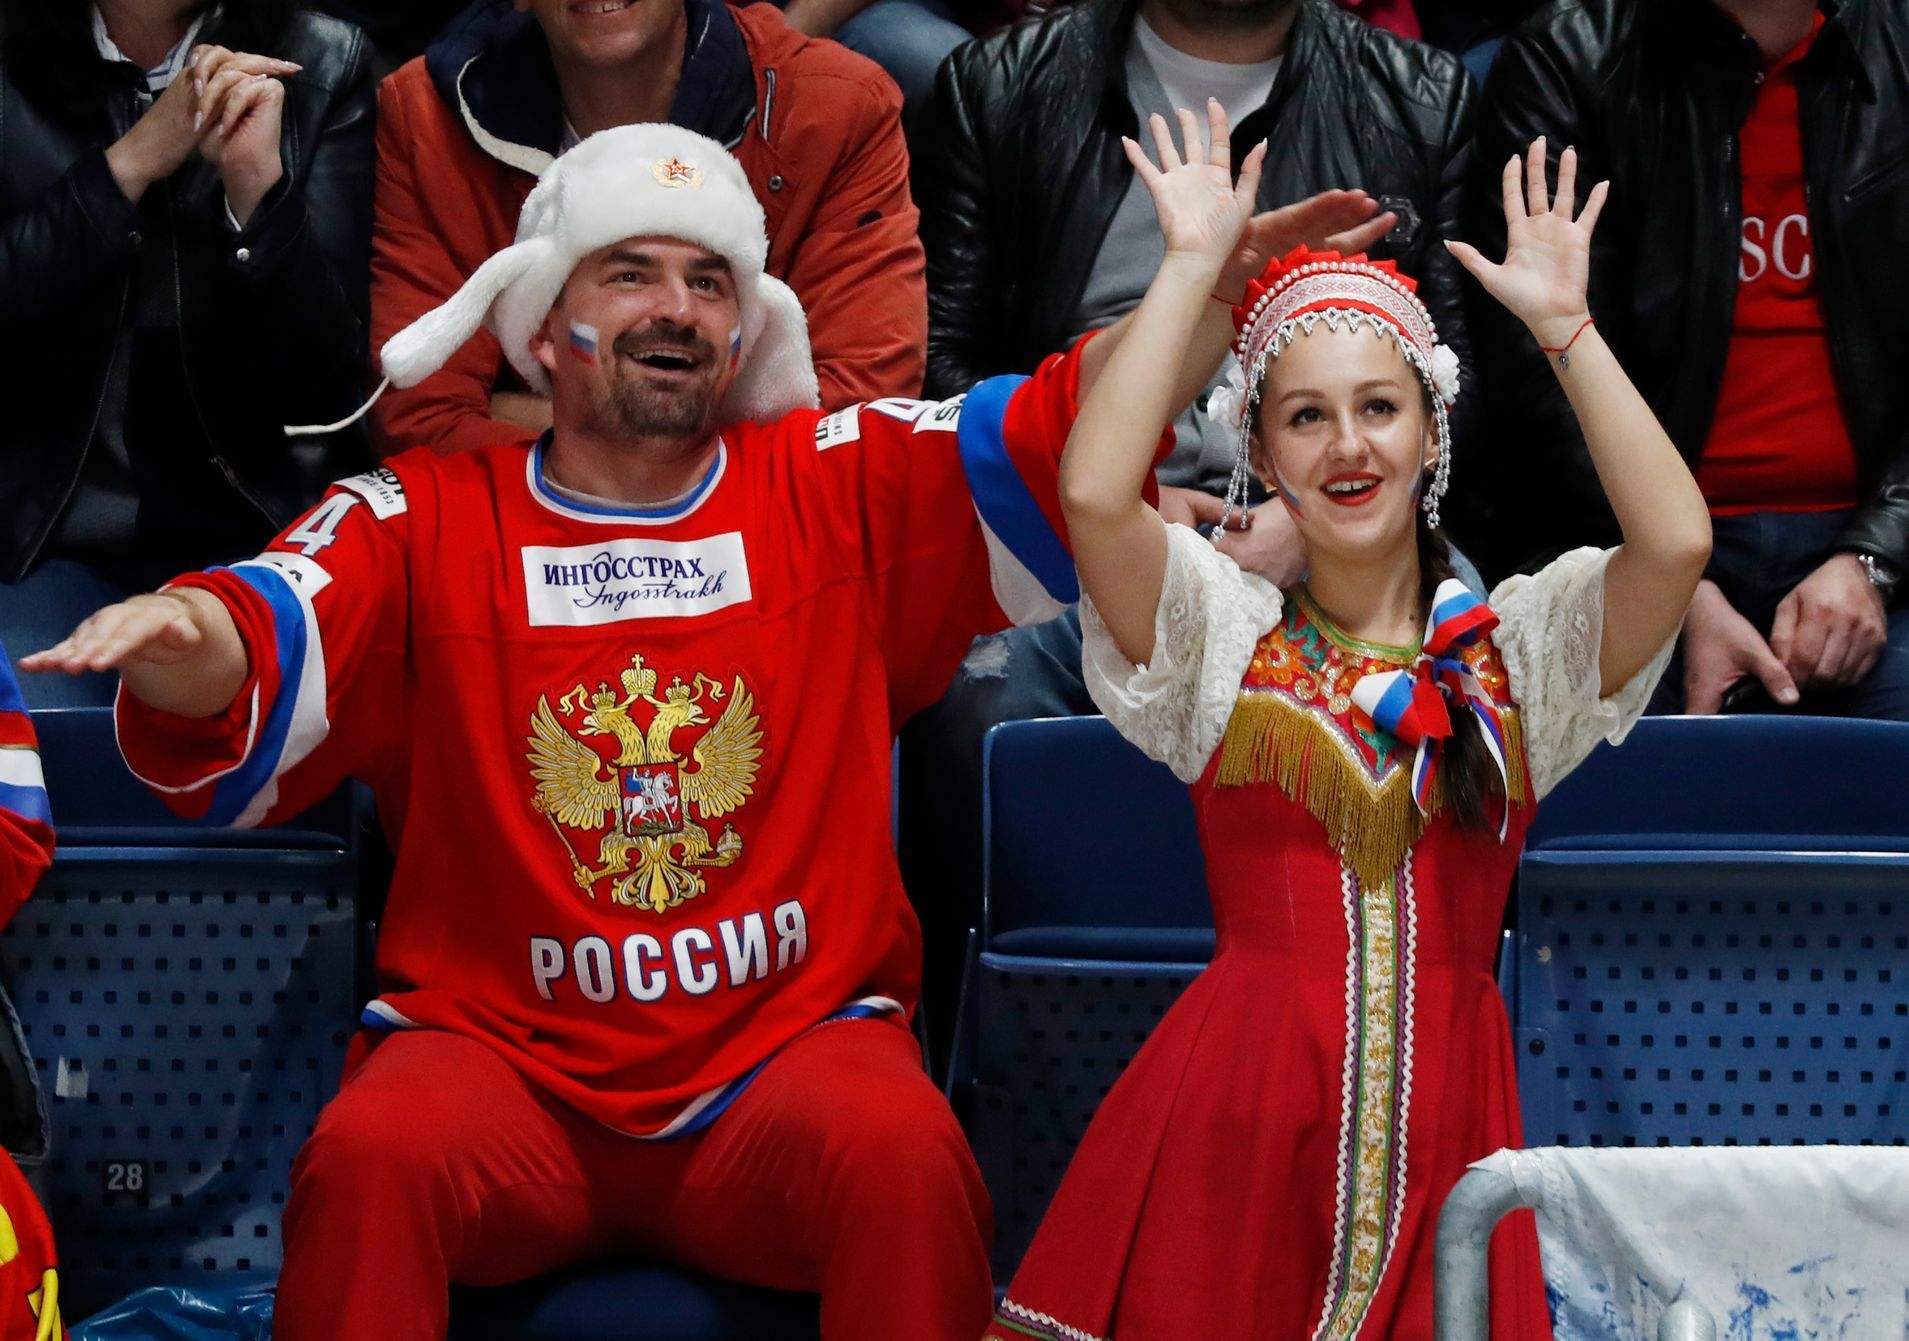 MS v hokeji 2019: Rusko - Itálie